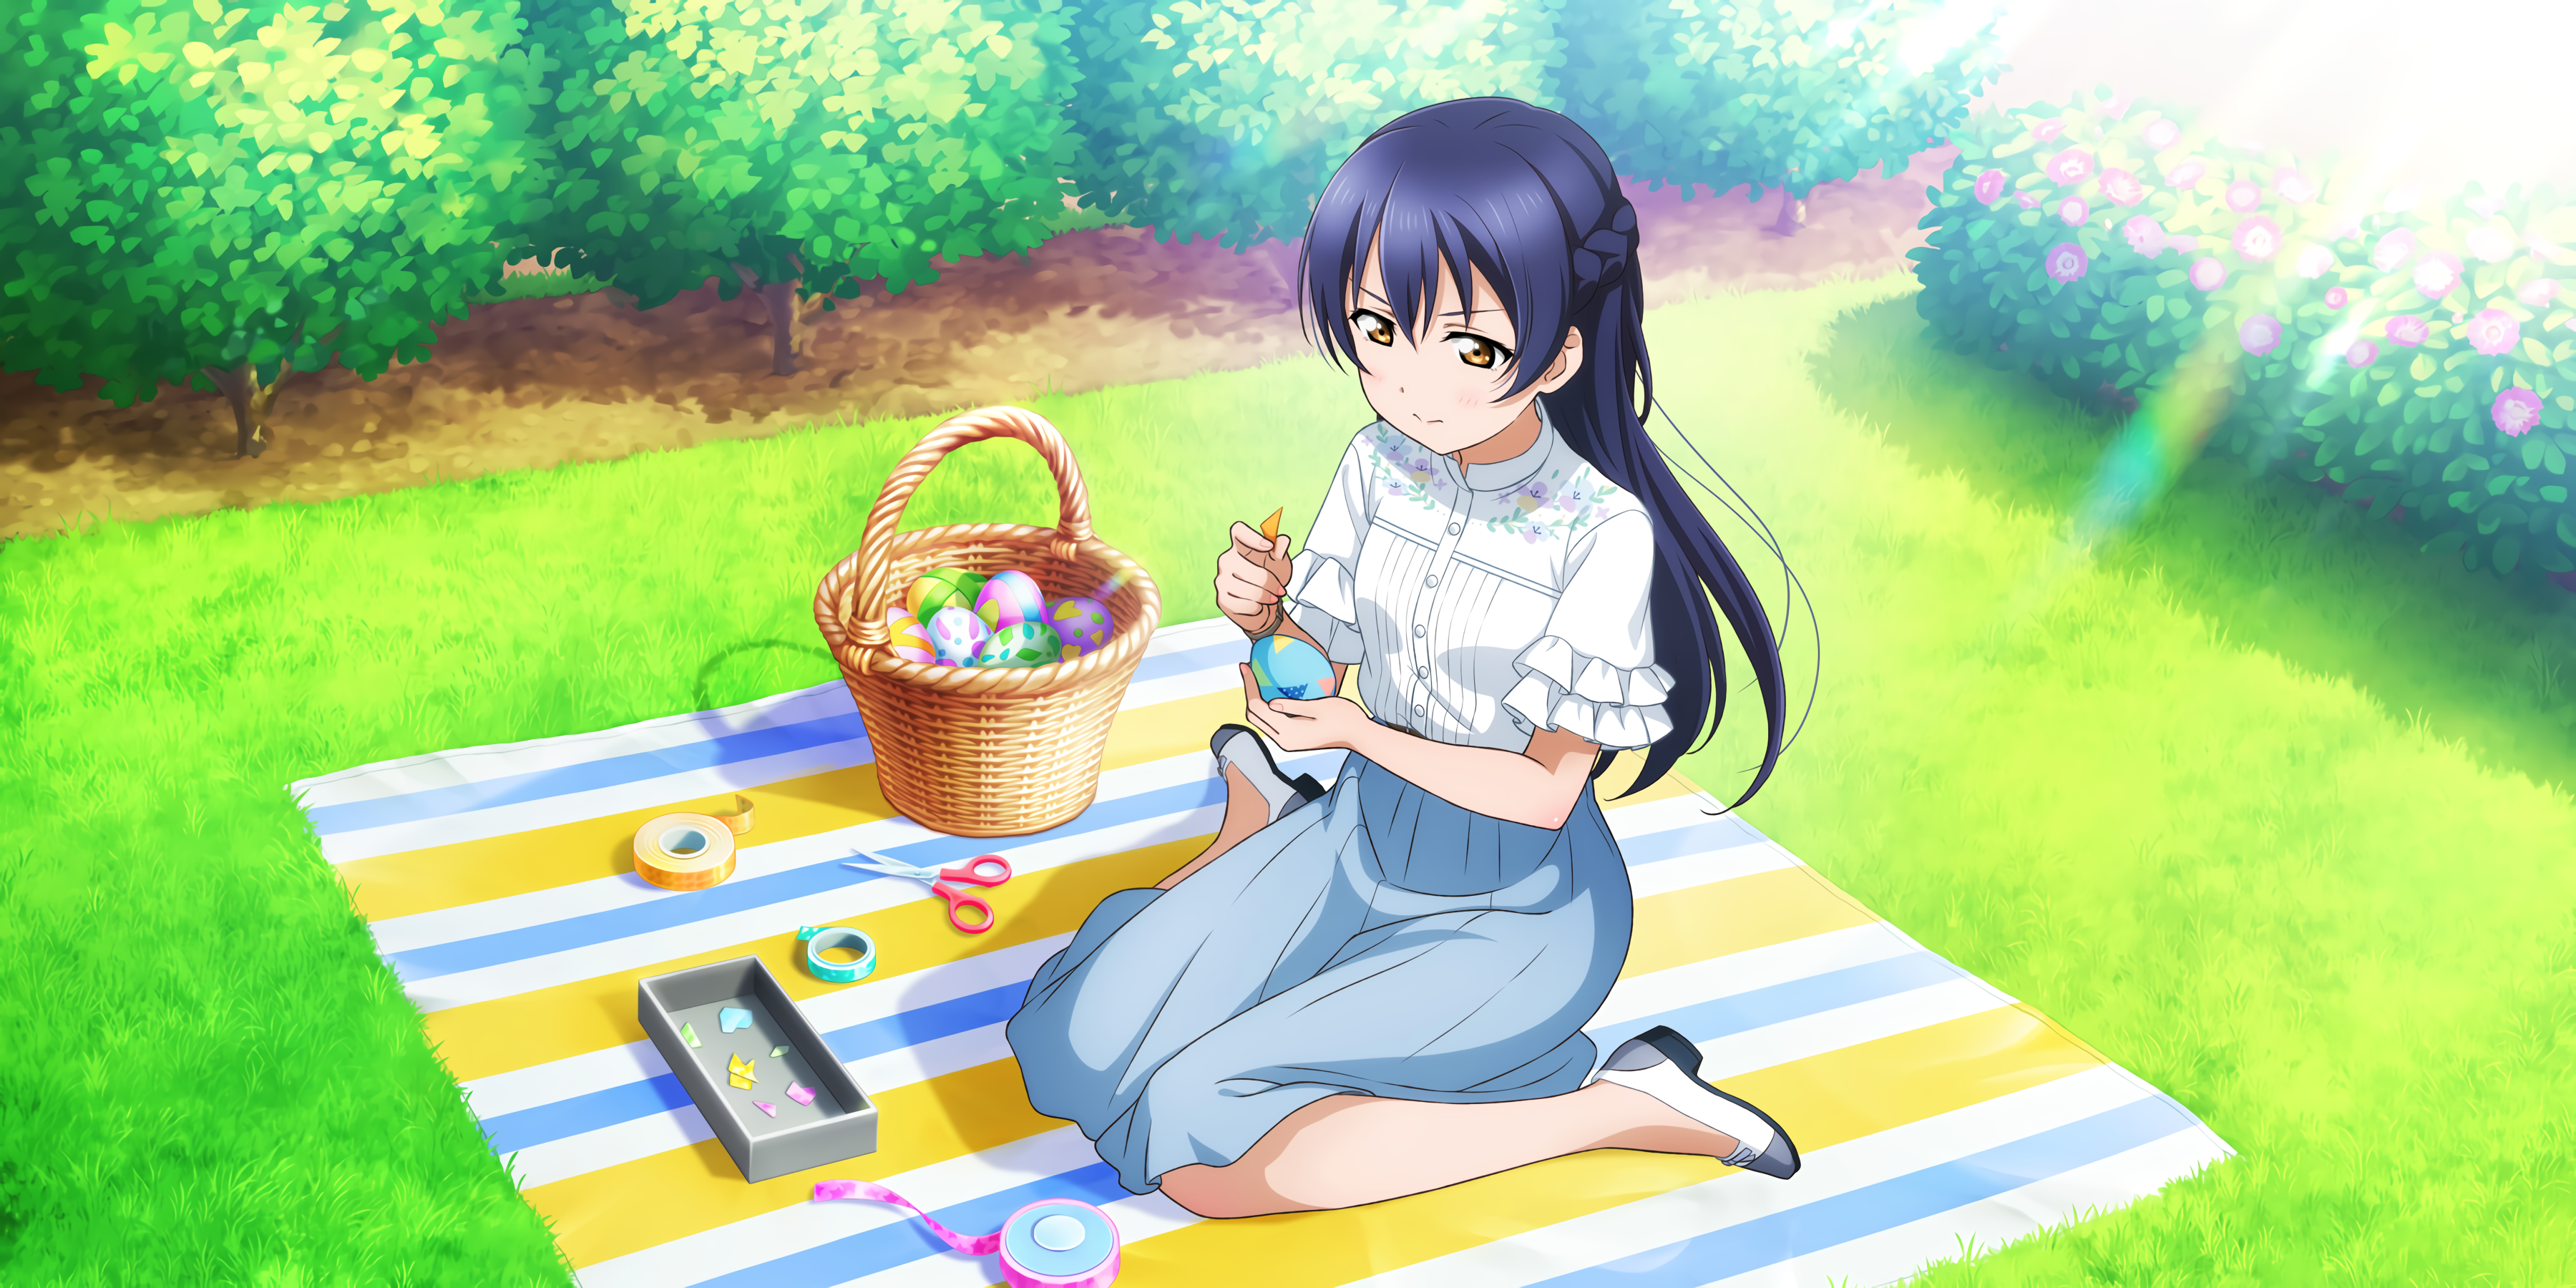 Sonoda Umi Love Live Anime Anime Girls Easter Eggs Easter 3600x1800